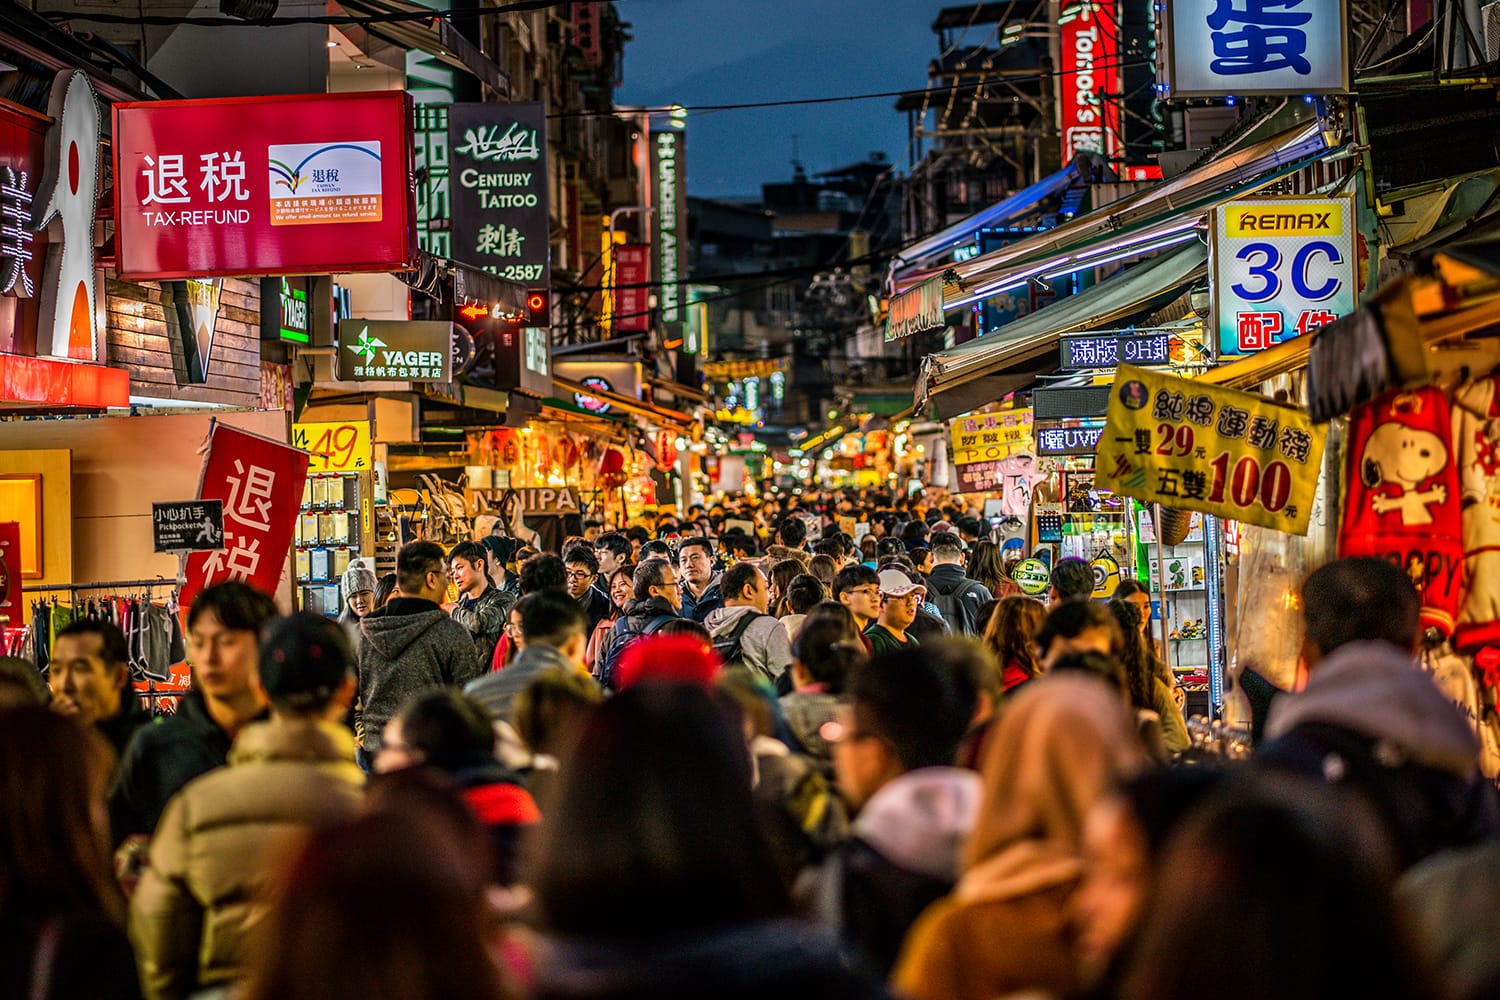  Street view of full of people Shilin night market in Taipei Taiwan